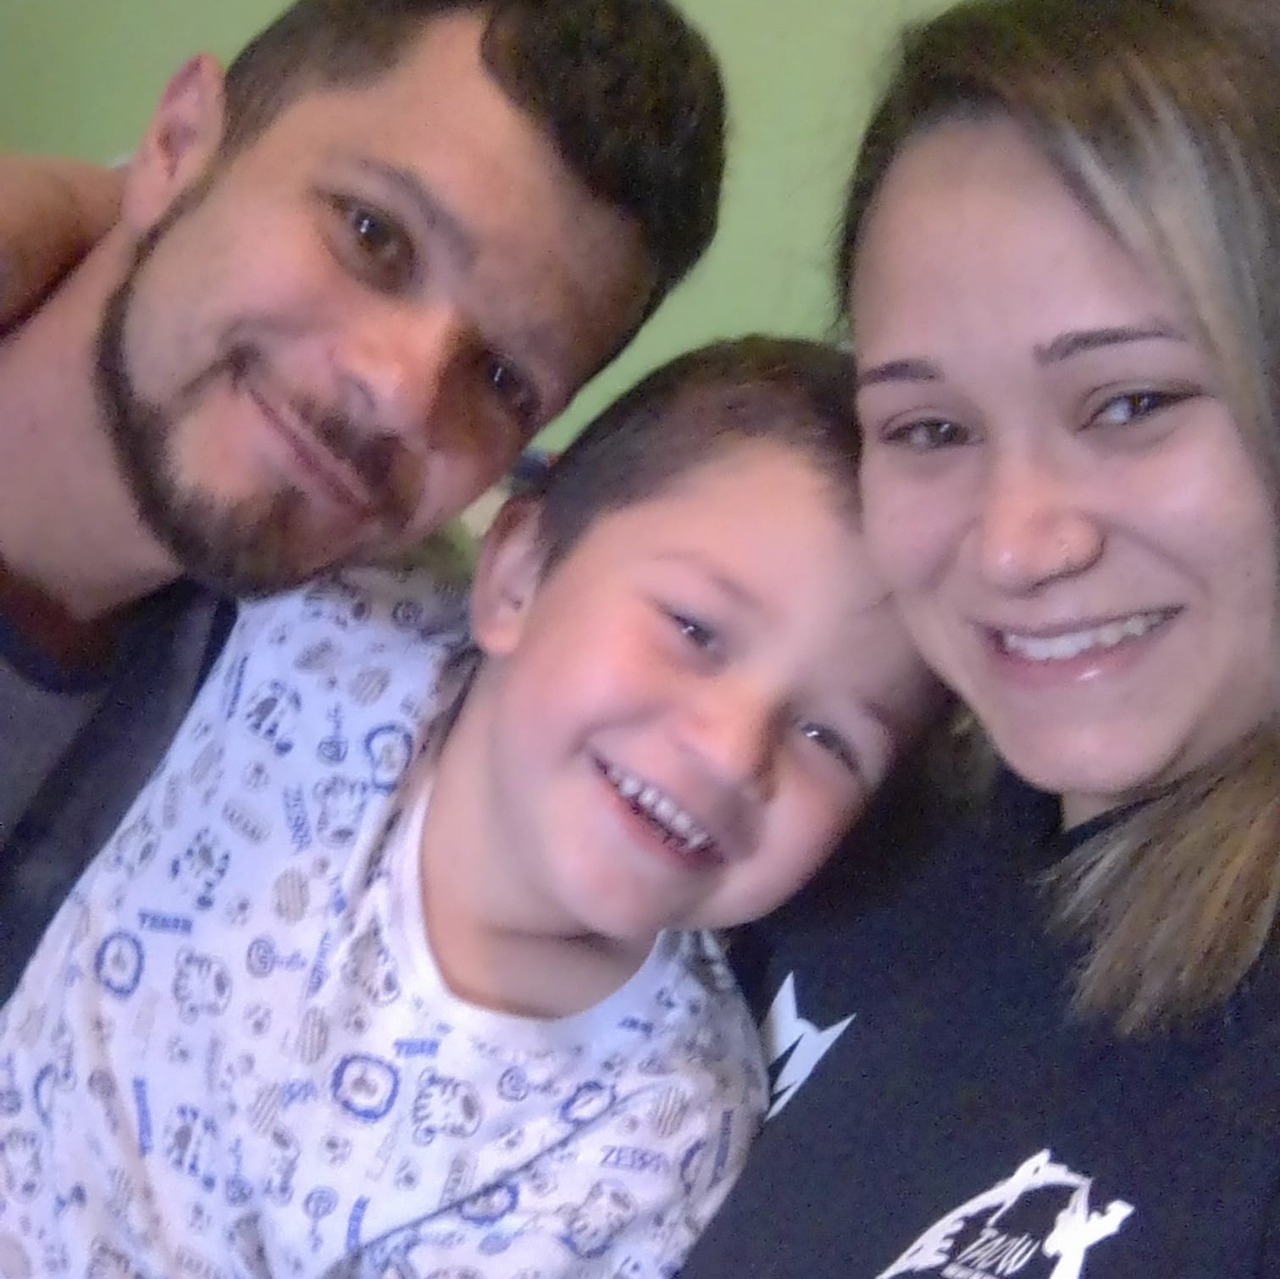 Identificados casal e criança de quatro anos mortos a tiros em Caxias do Sul  | Rádio Studio 87.7 FM